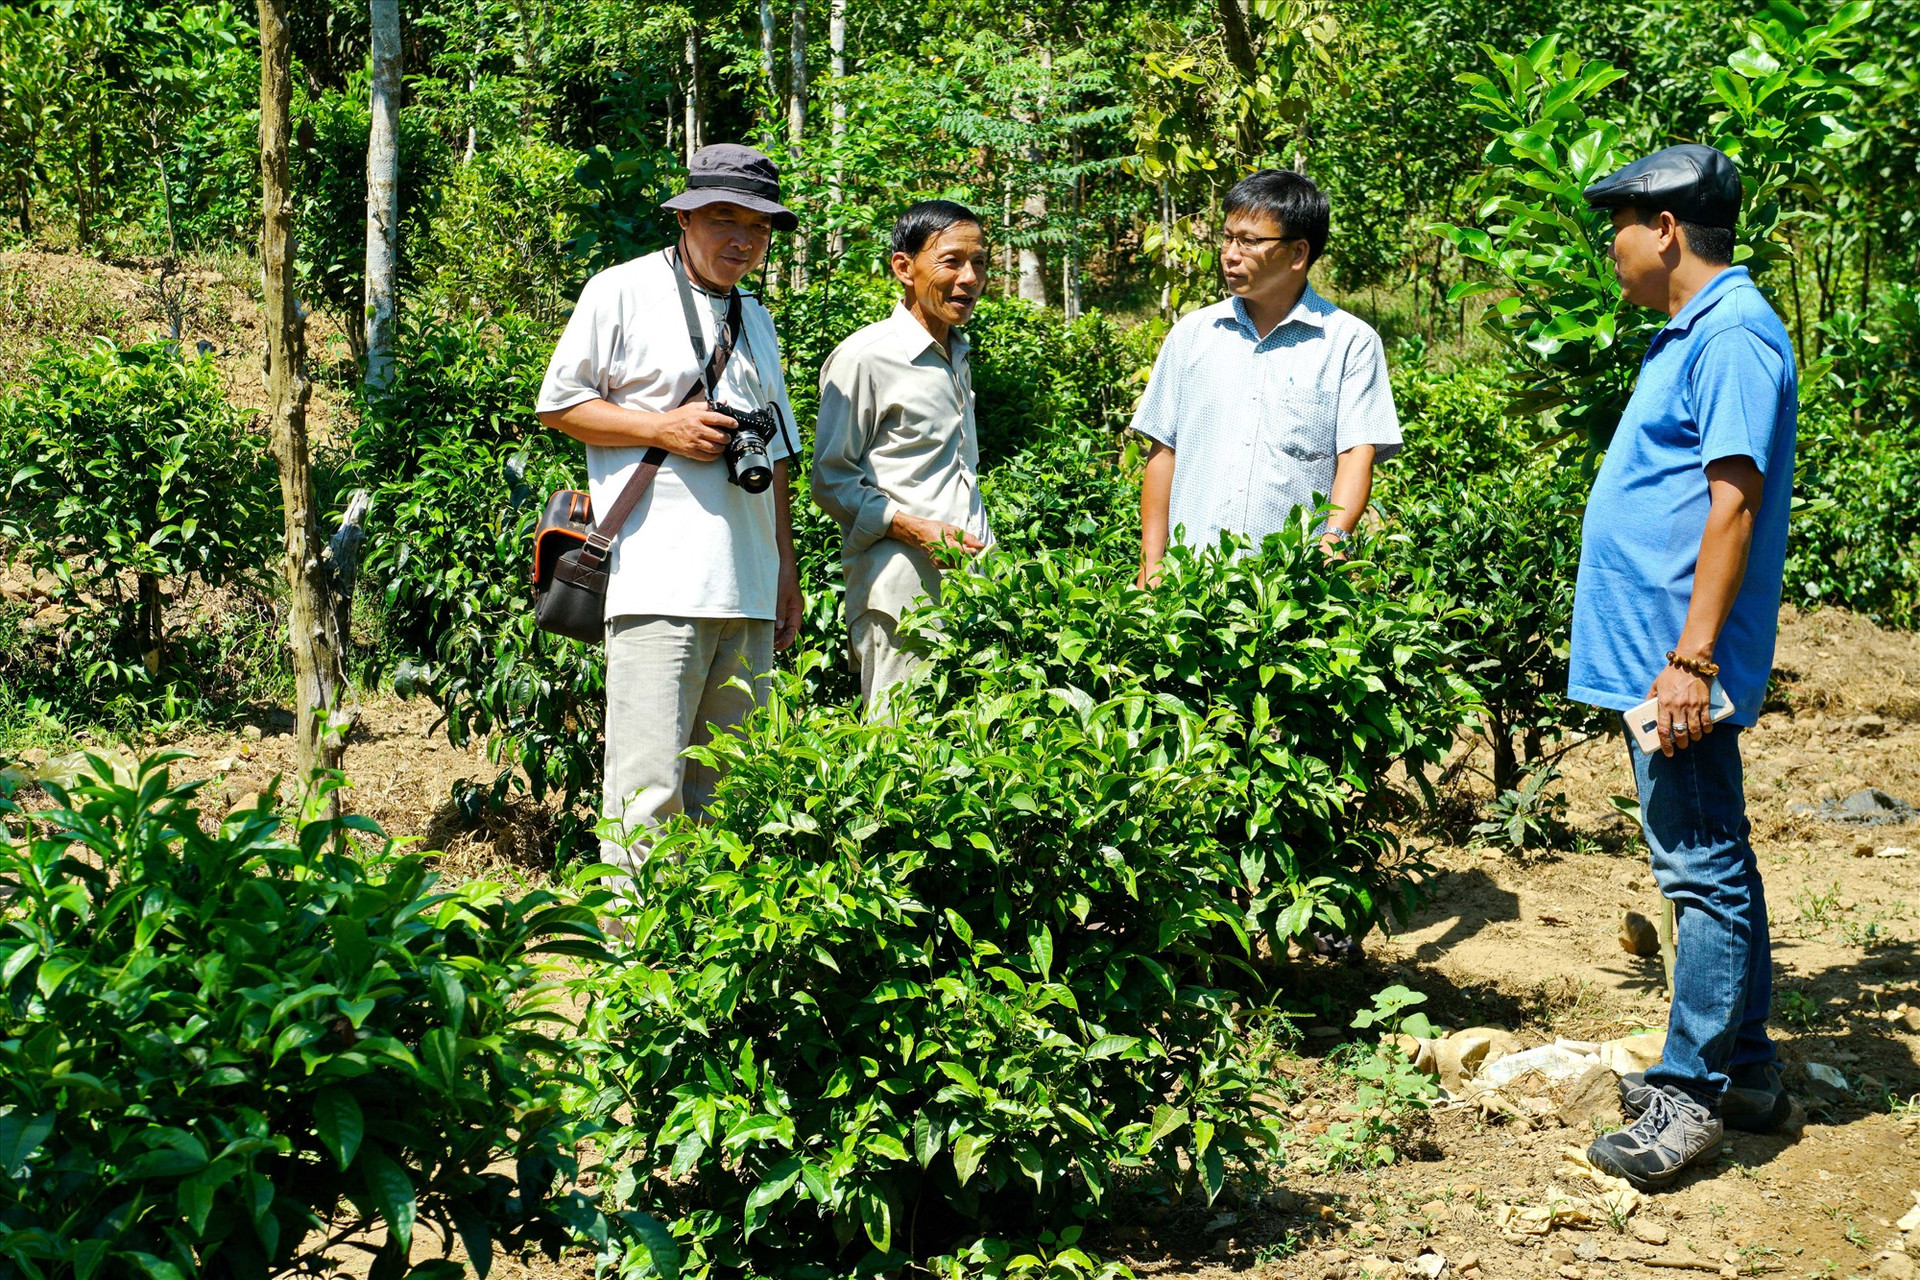 Ông Nguyễn Văn Hùng (người đứng thứ 2 từ trái sang) giới thiệu với khách tham quan về cây chè bản địa. Ảnh: NGUYỄN ĐIỆN NGỌC